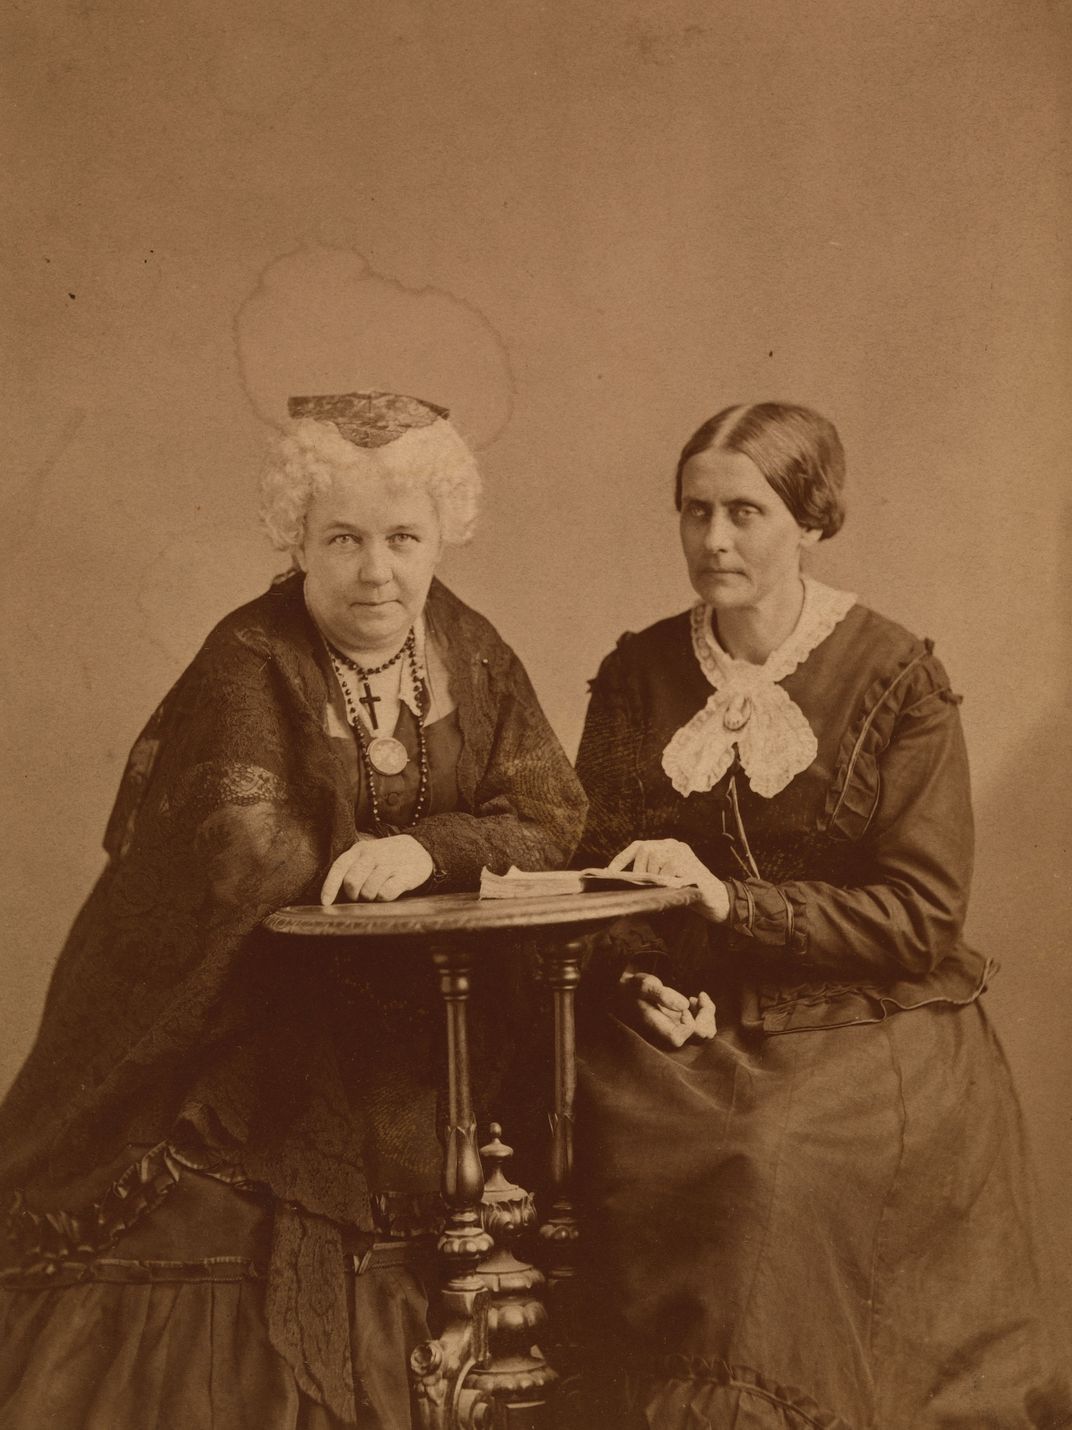 Elizabeth Cady Stanton, Susan B. Anthony